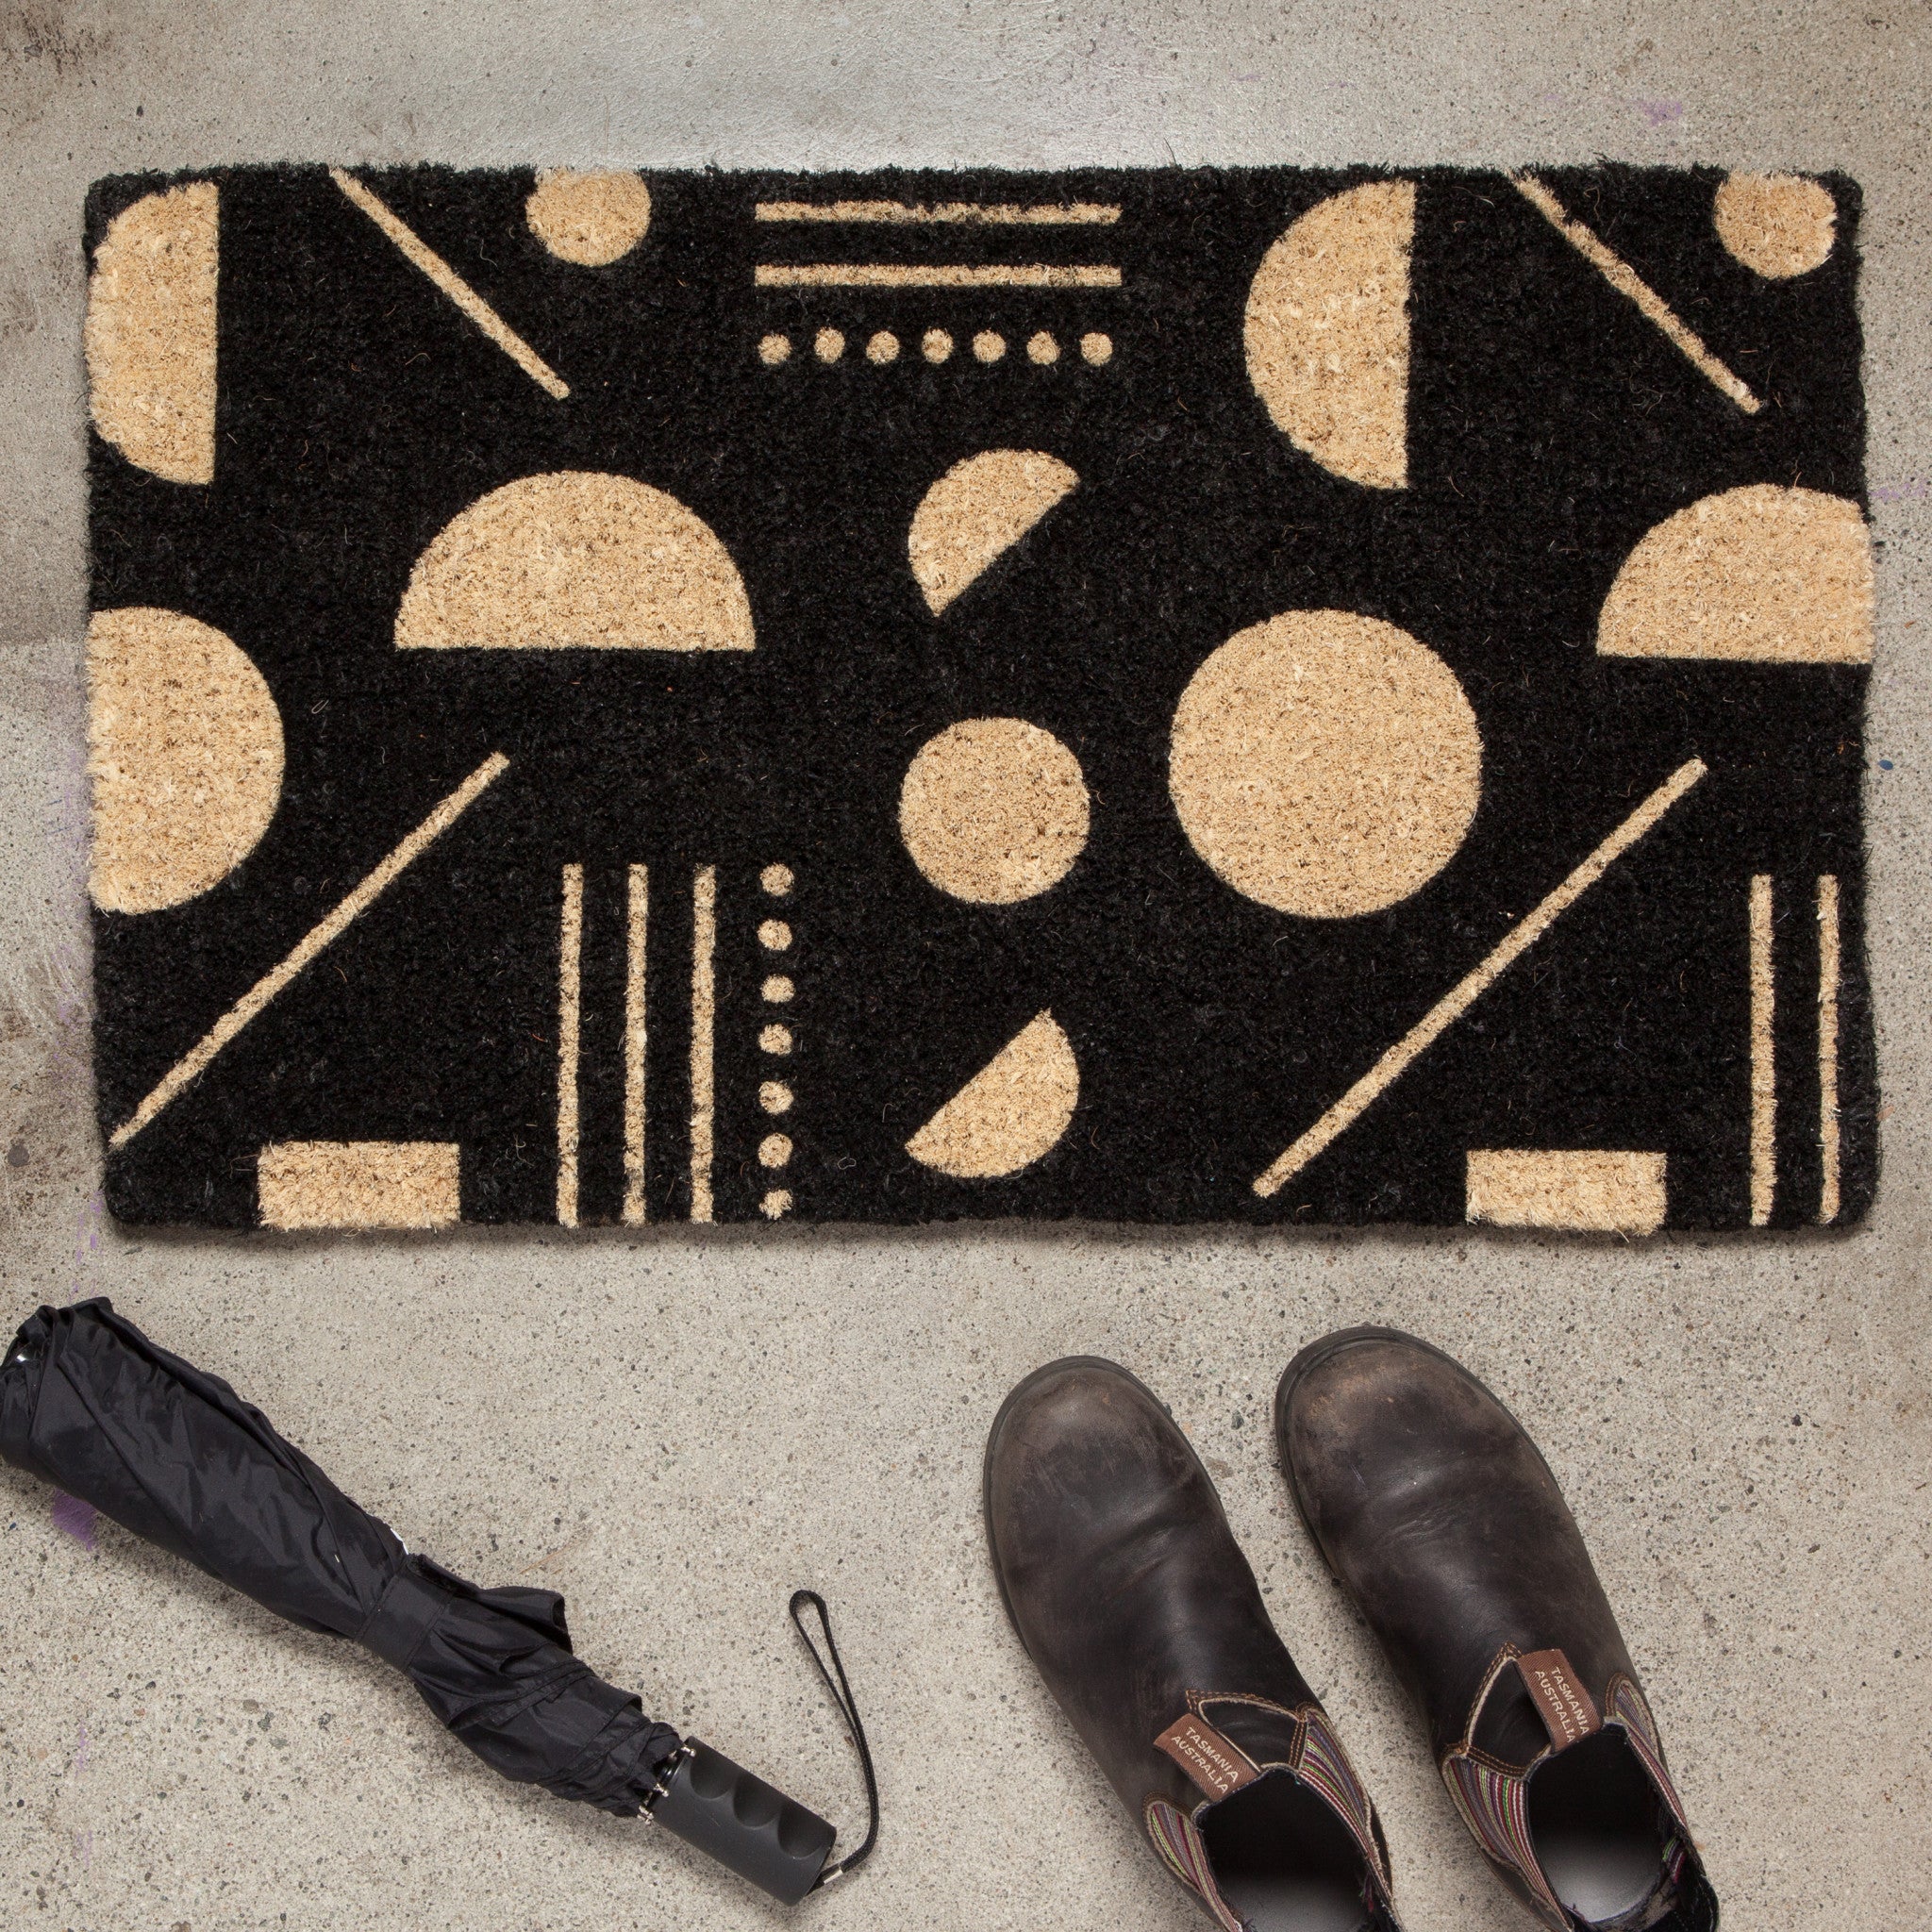 Domino Coir Printed Doormat